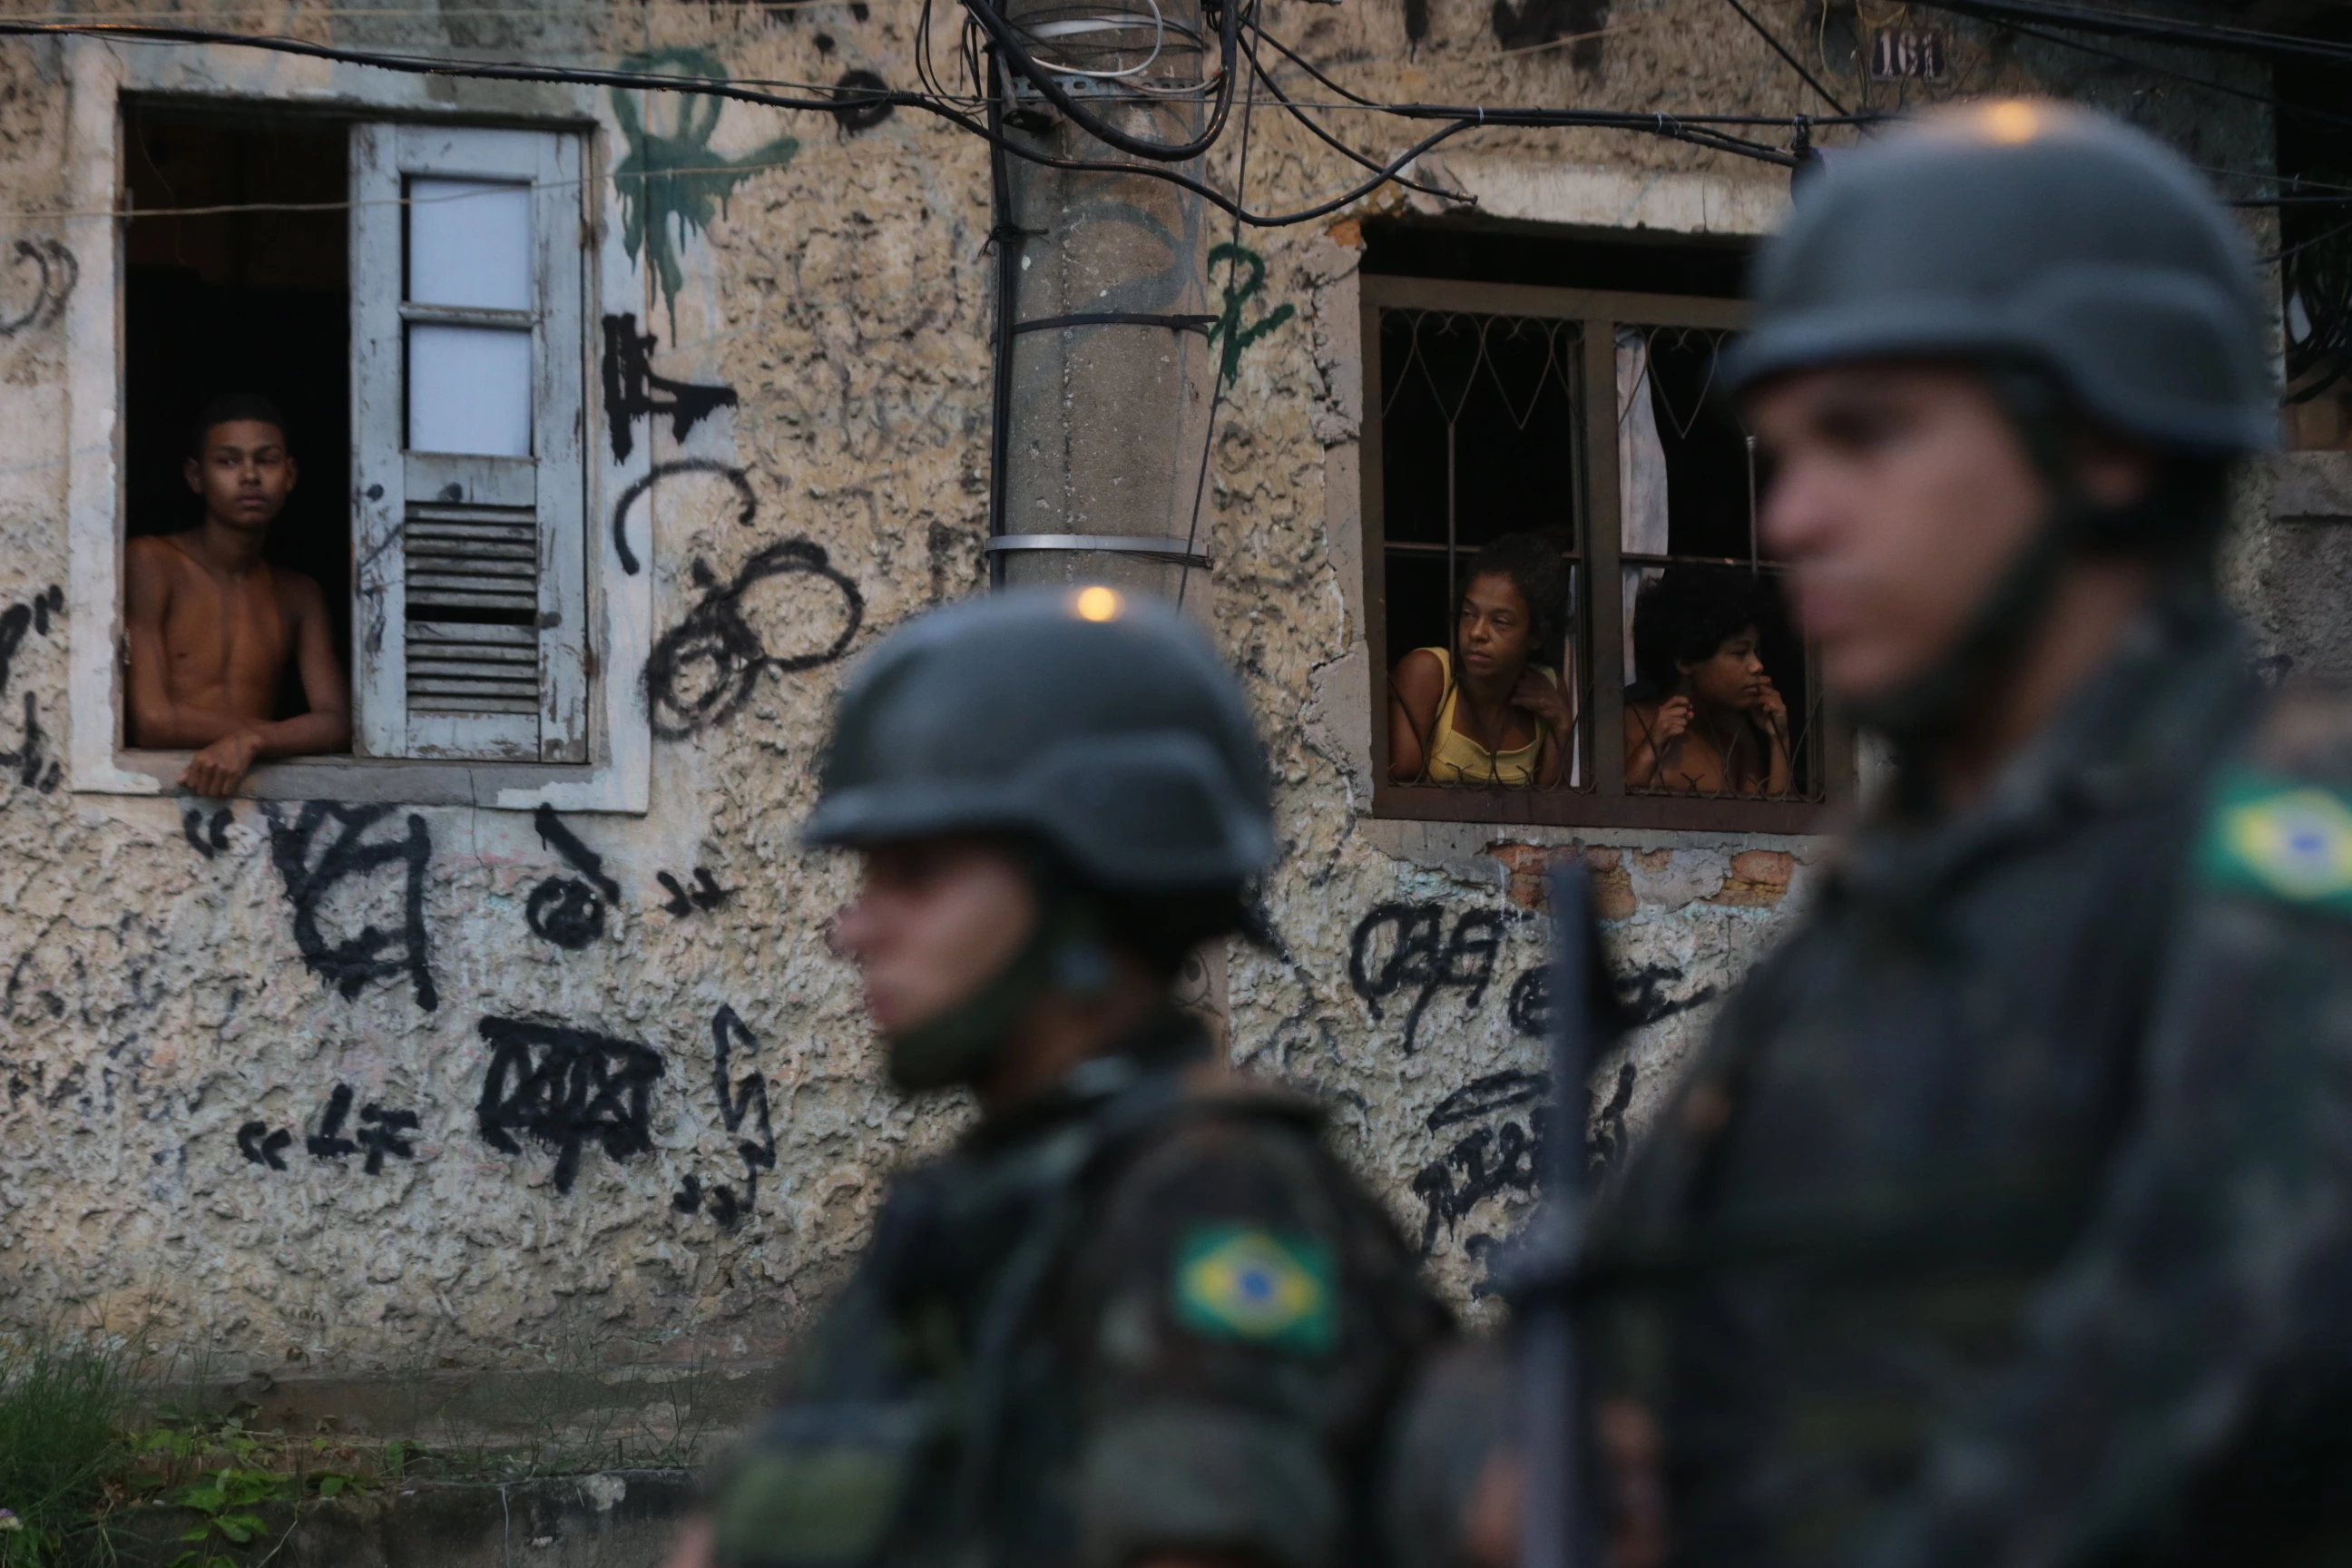 O Exercito Brasileiro em Sao Paulo envia mais de 400 militares para